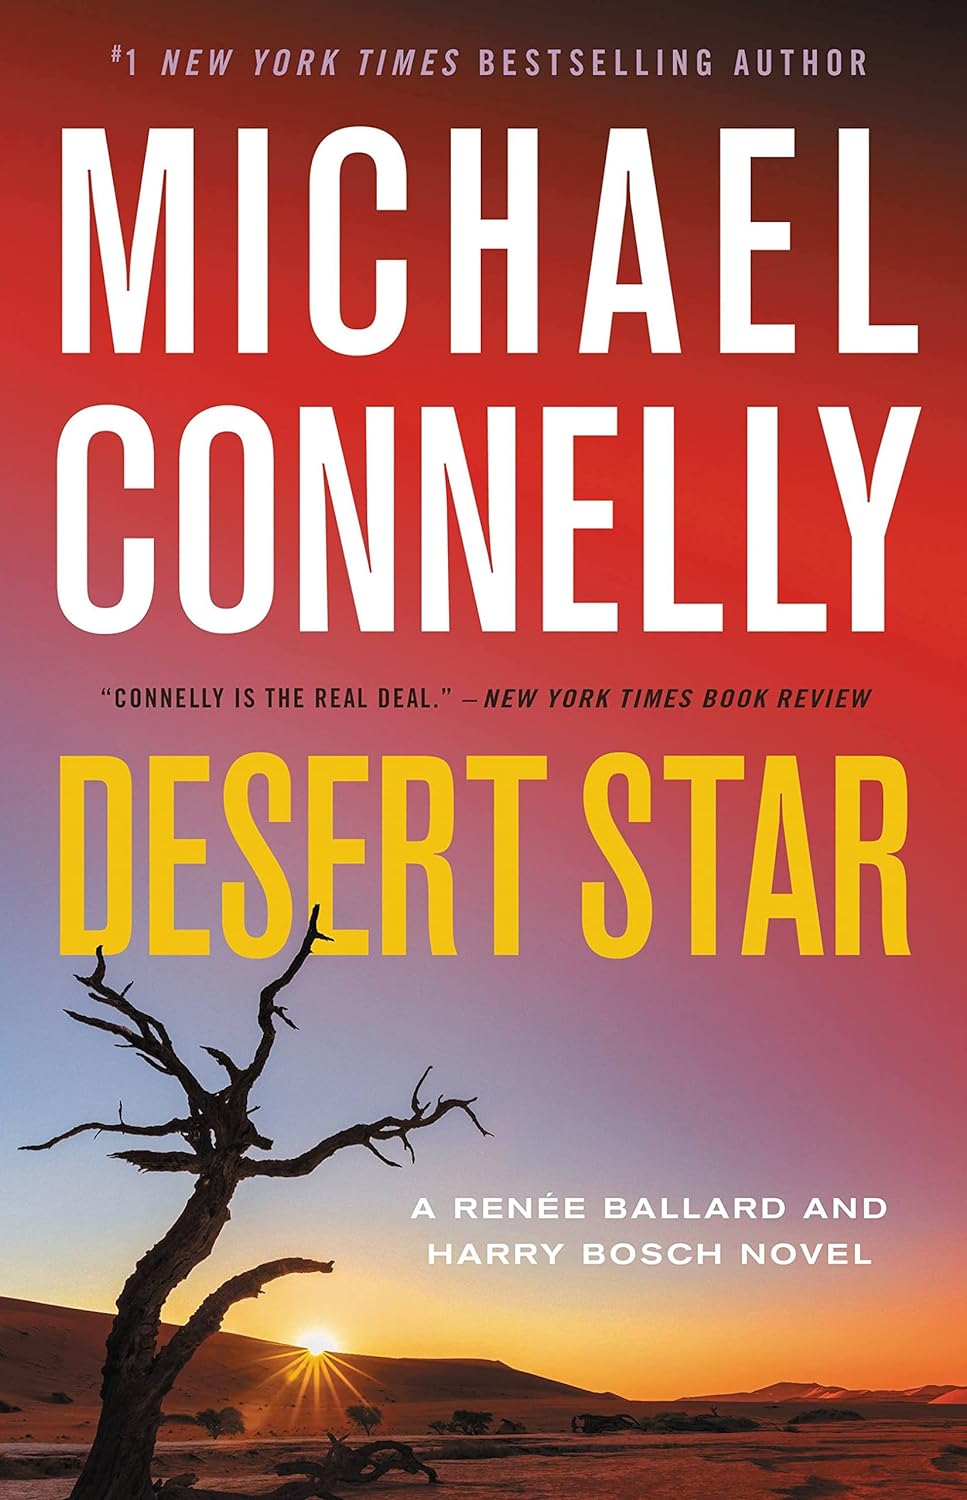 Image for "Desert Star: A Renée Ballard and Harry Bosch Novel"